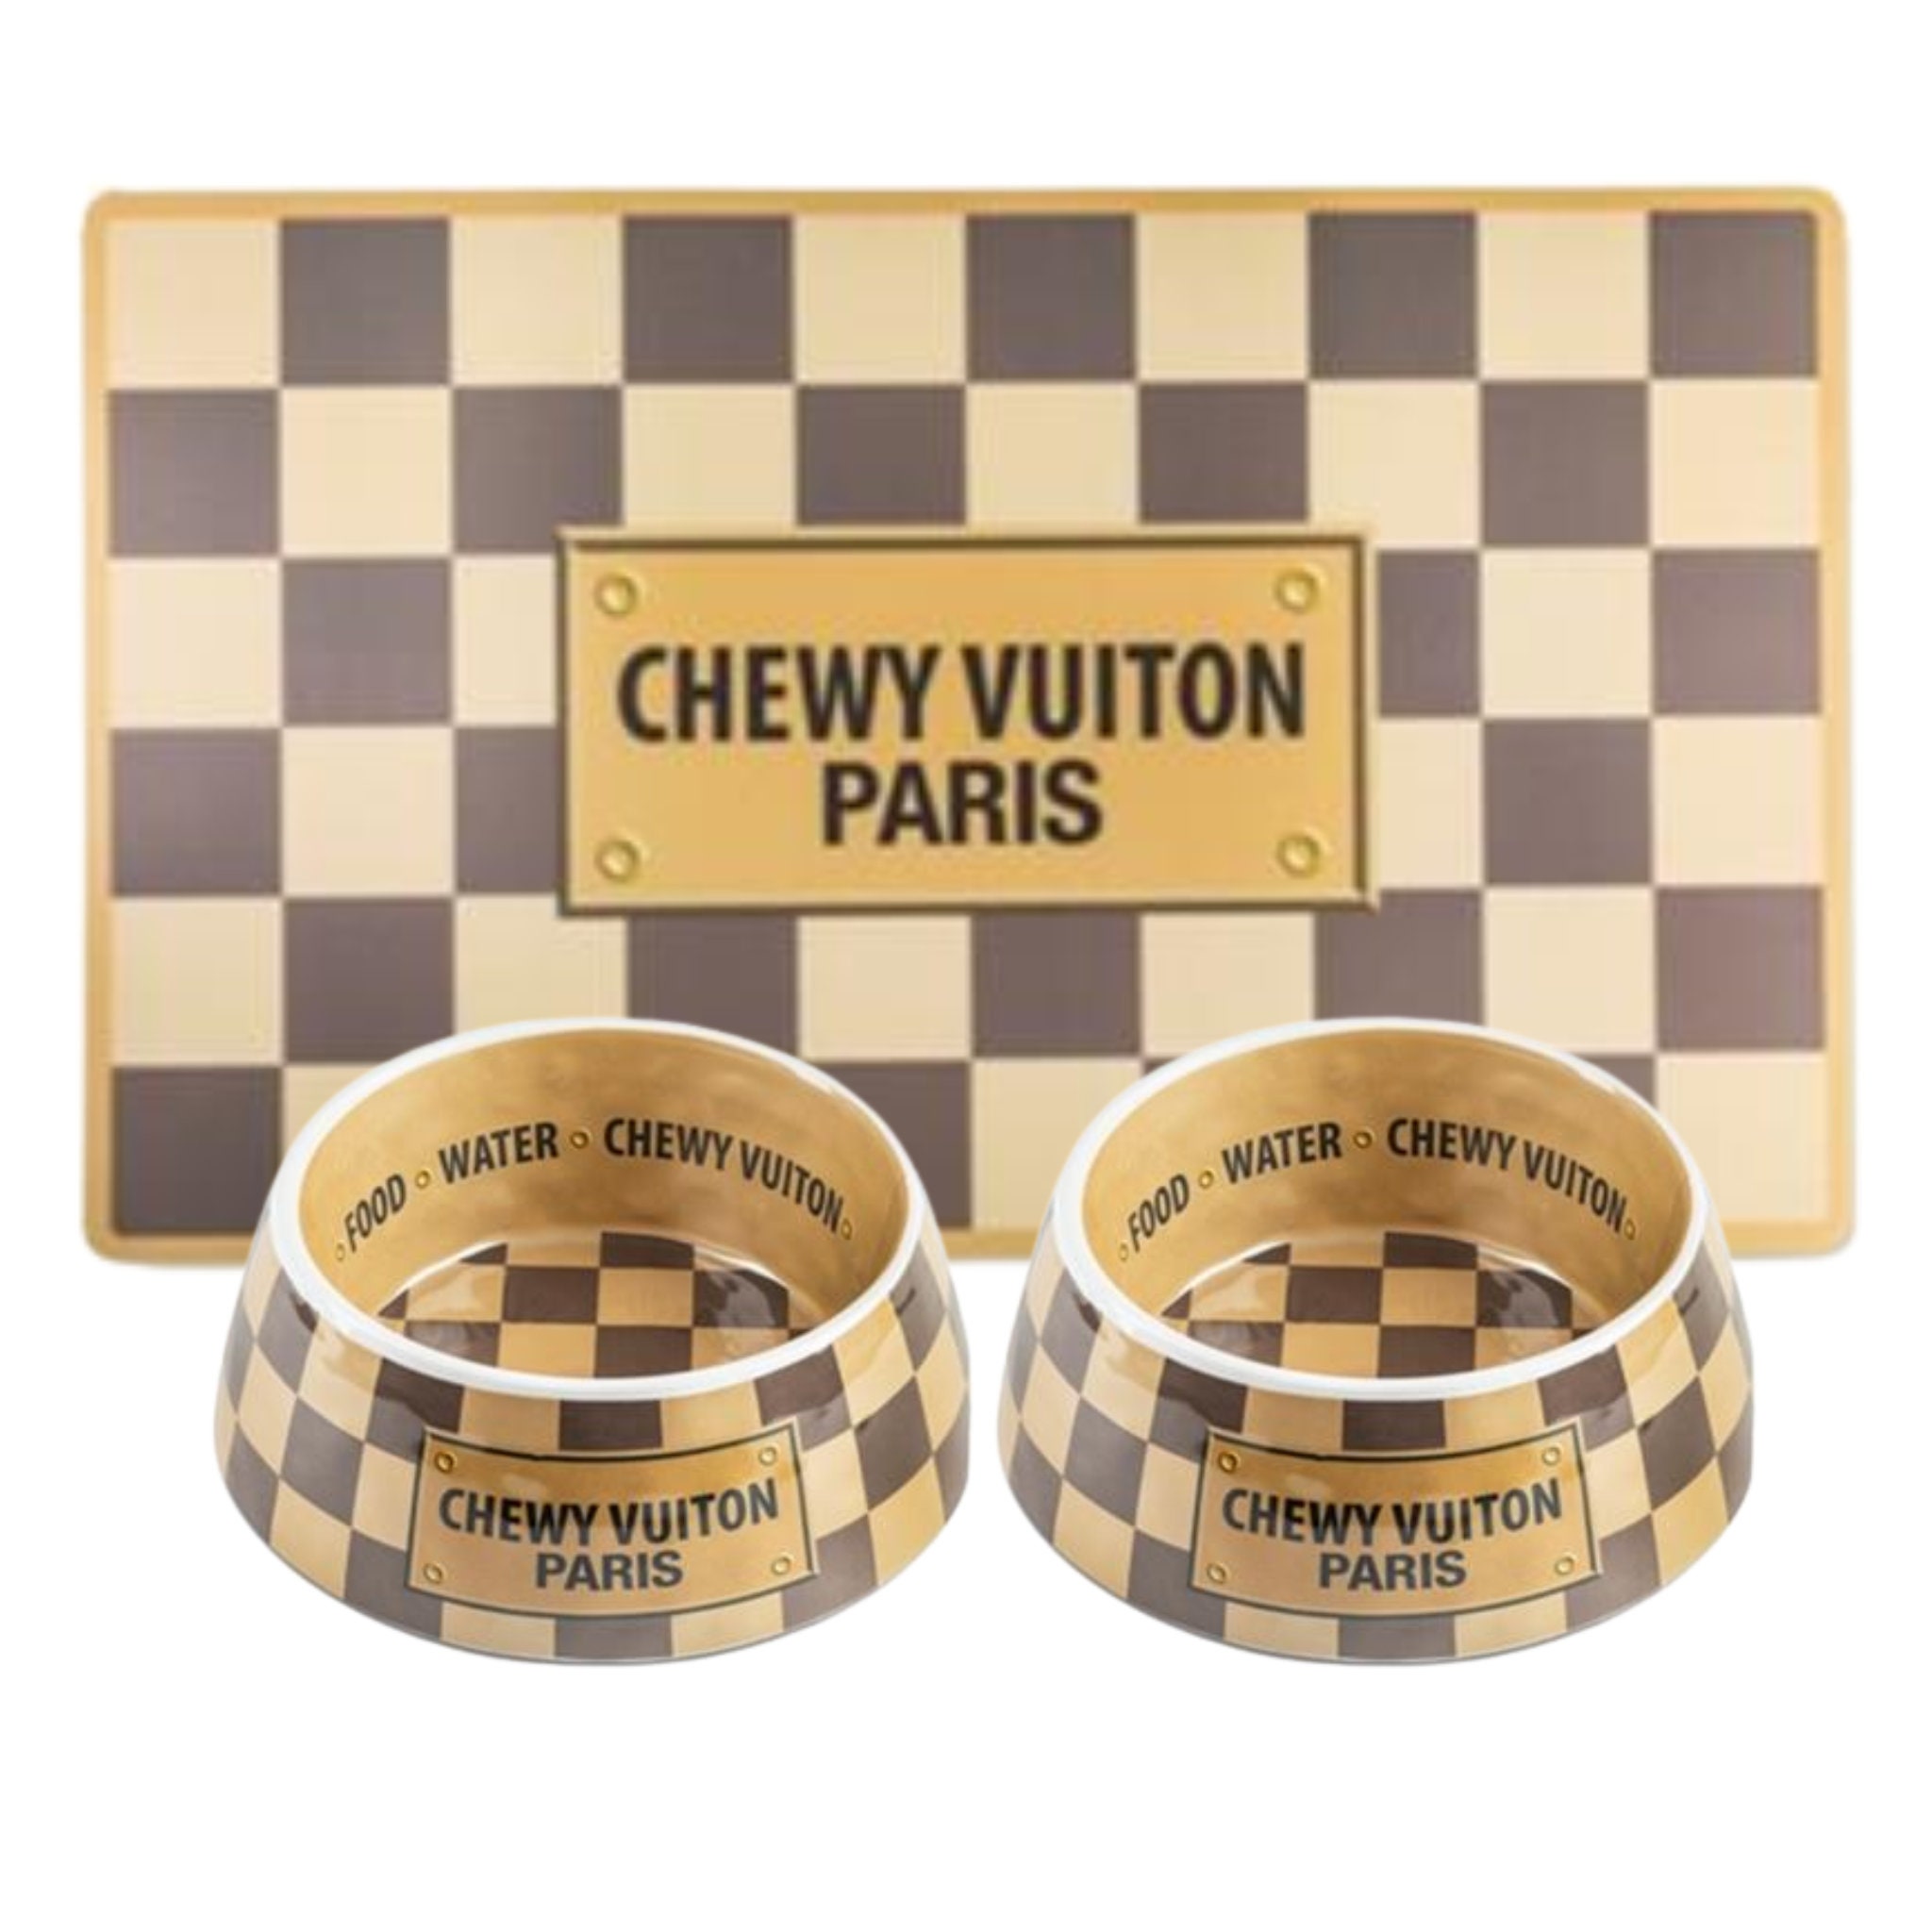 Chewy Vuiton Dog Bowl – Jen's Designer Deals